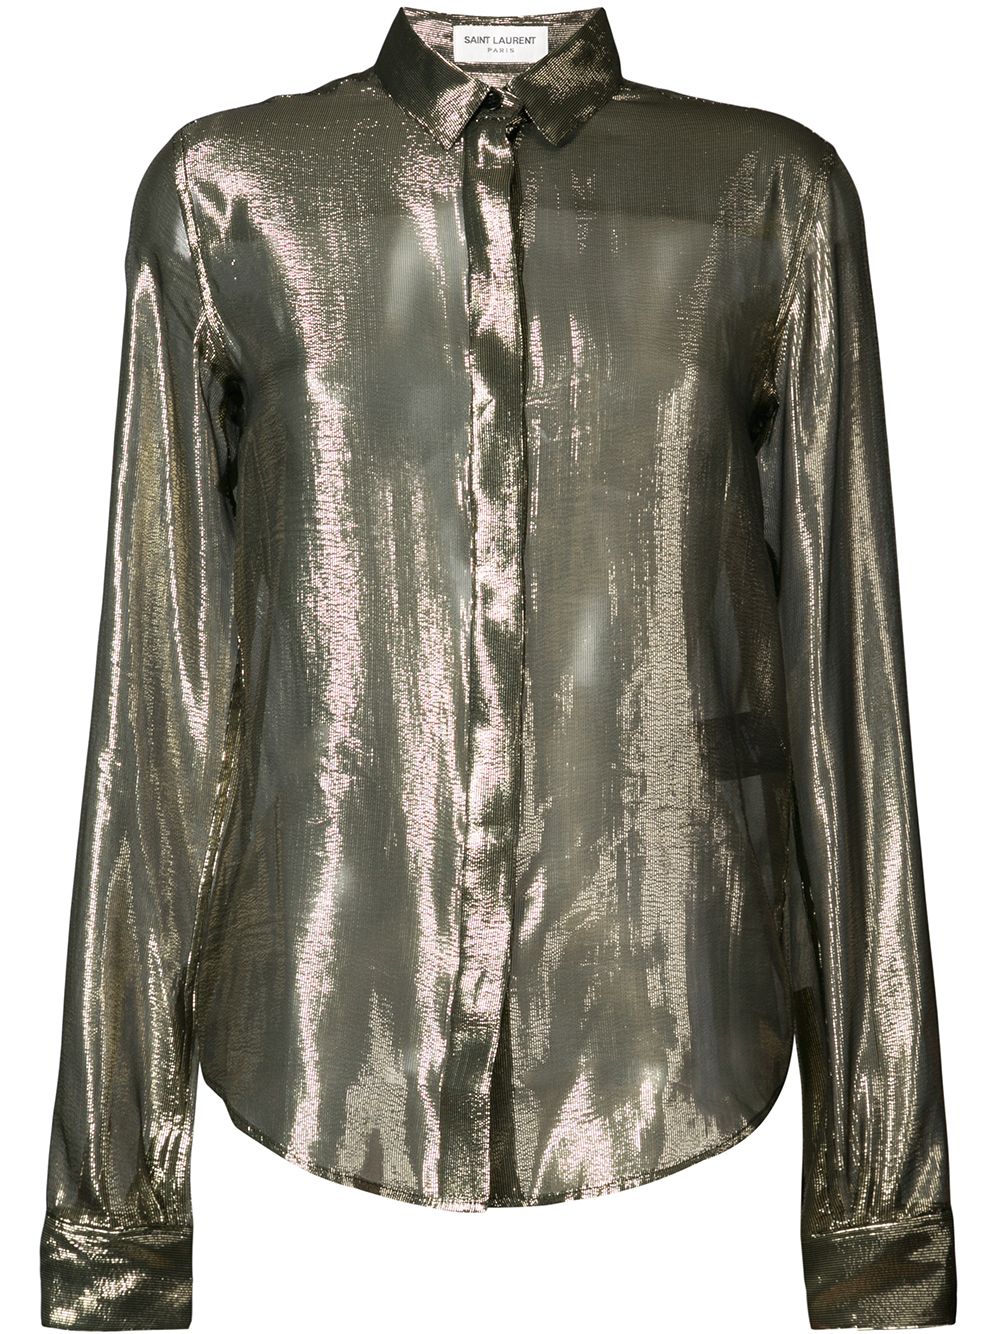 фото Saint Laurent прозрачная блузка с эффектом металлик